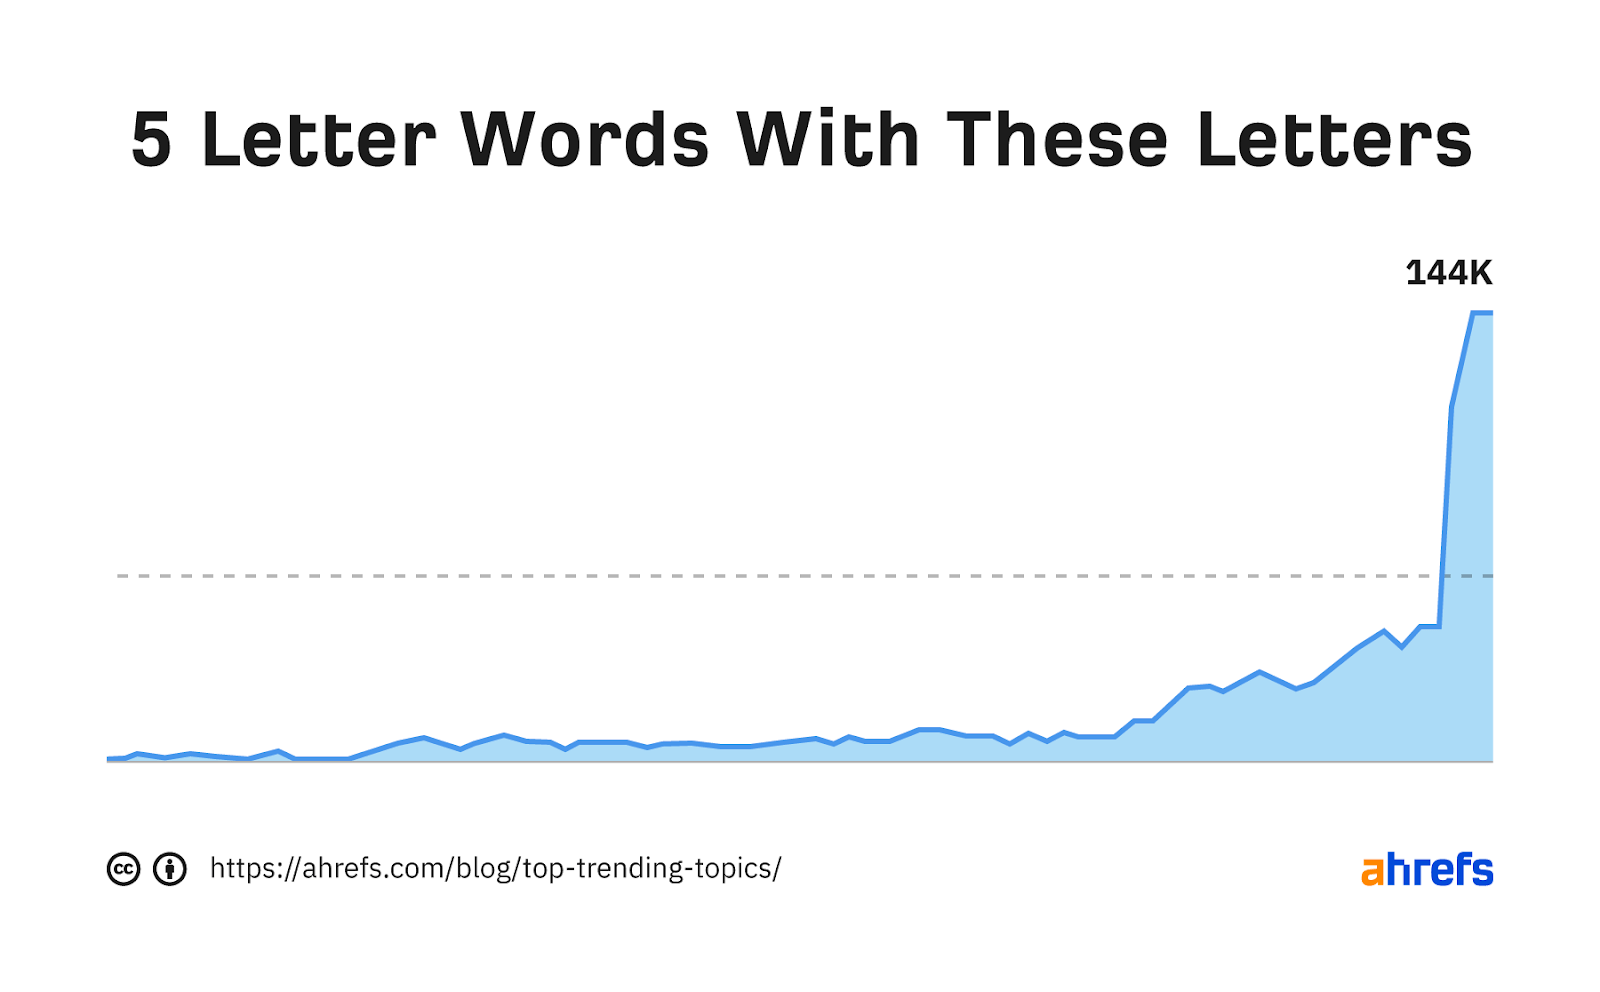 Gráfico de tendencia de la palabra clave "Palabras de 5 letras con estas letras"